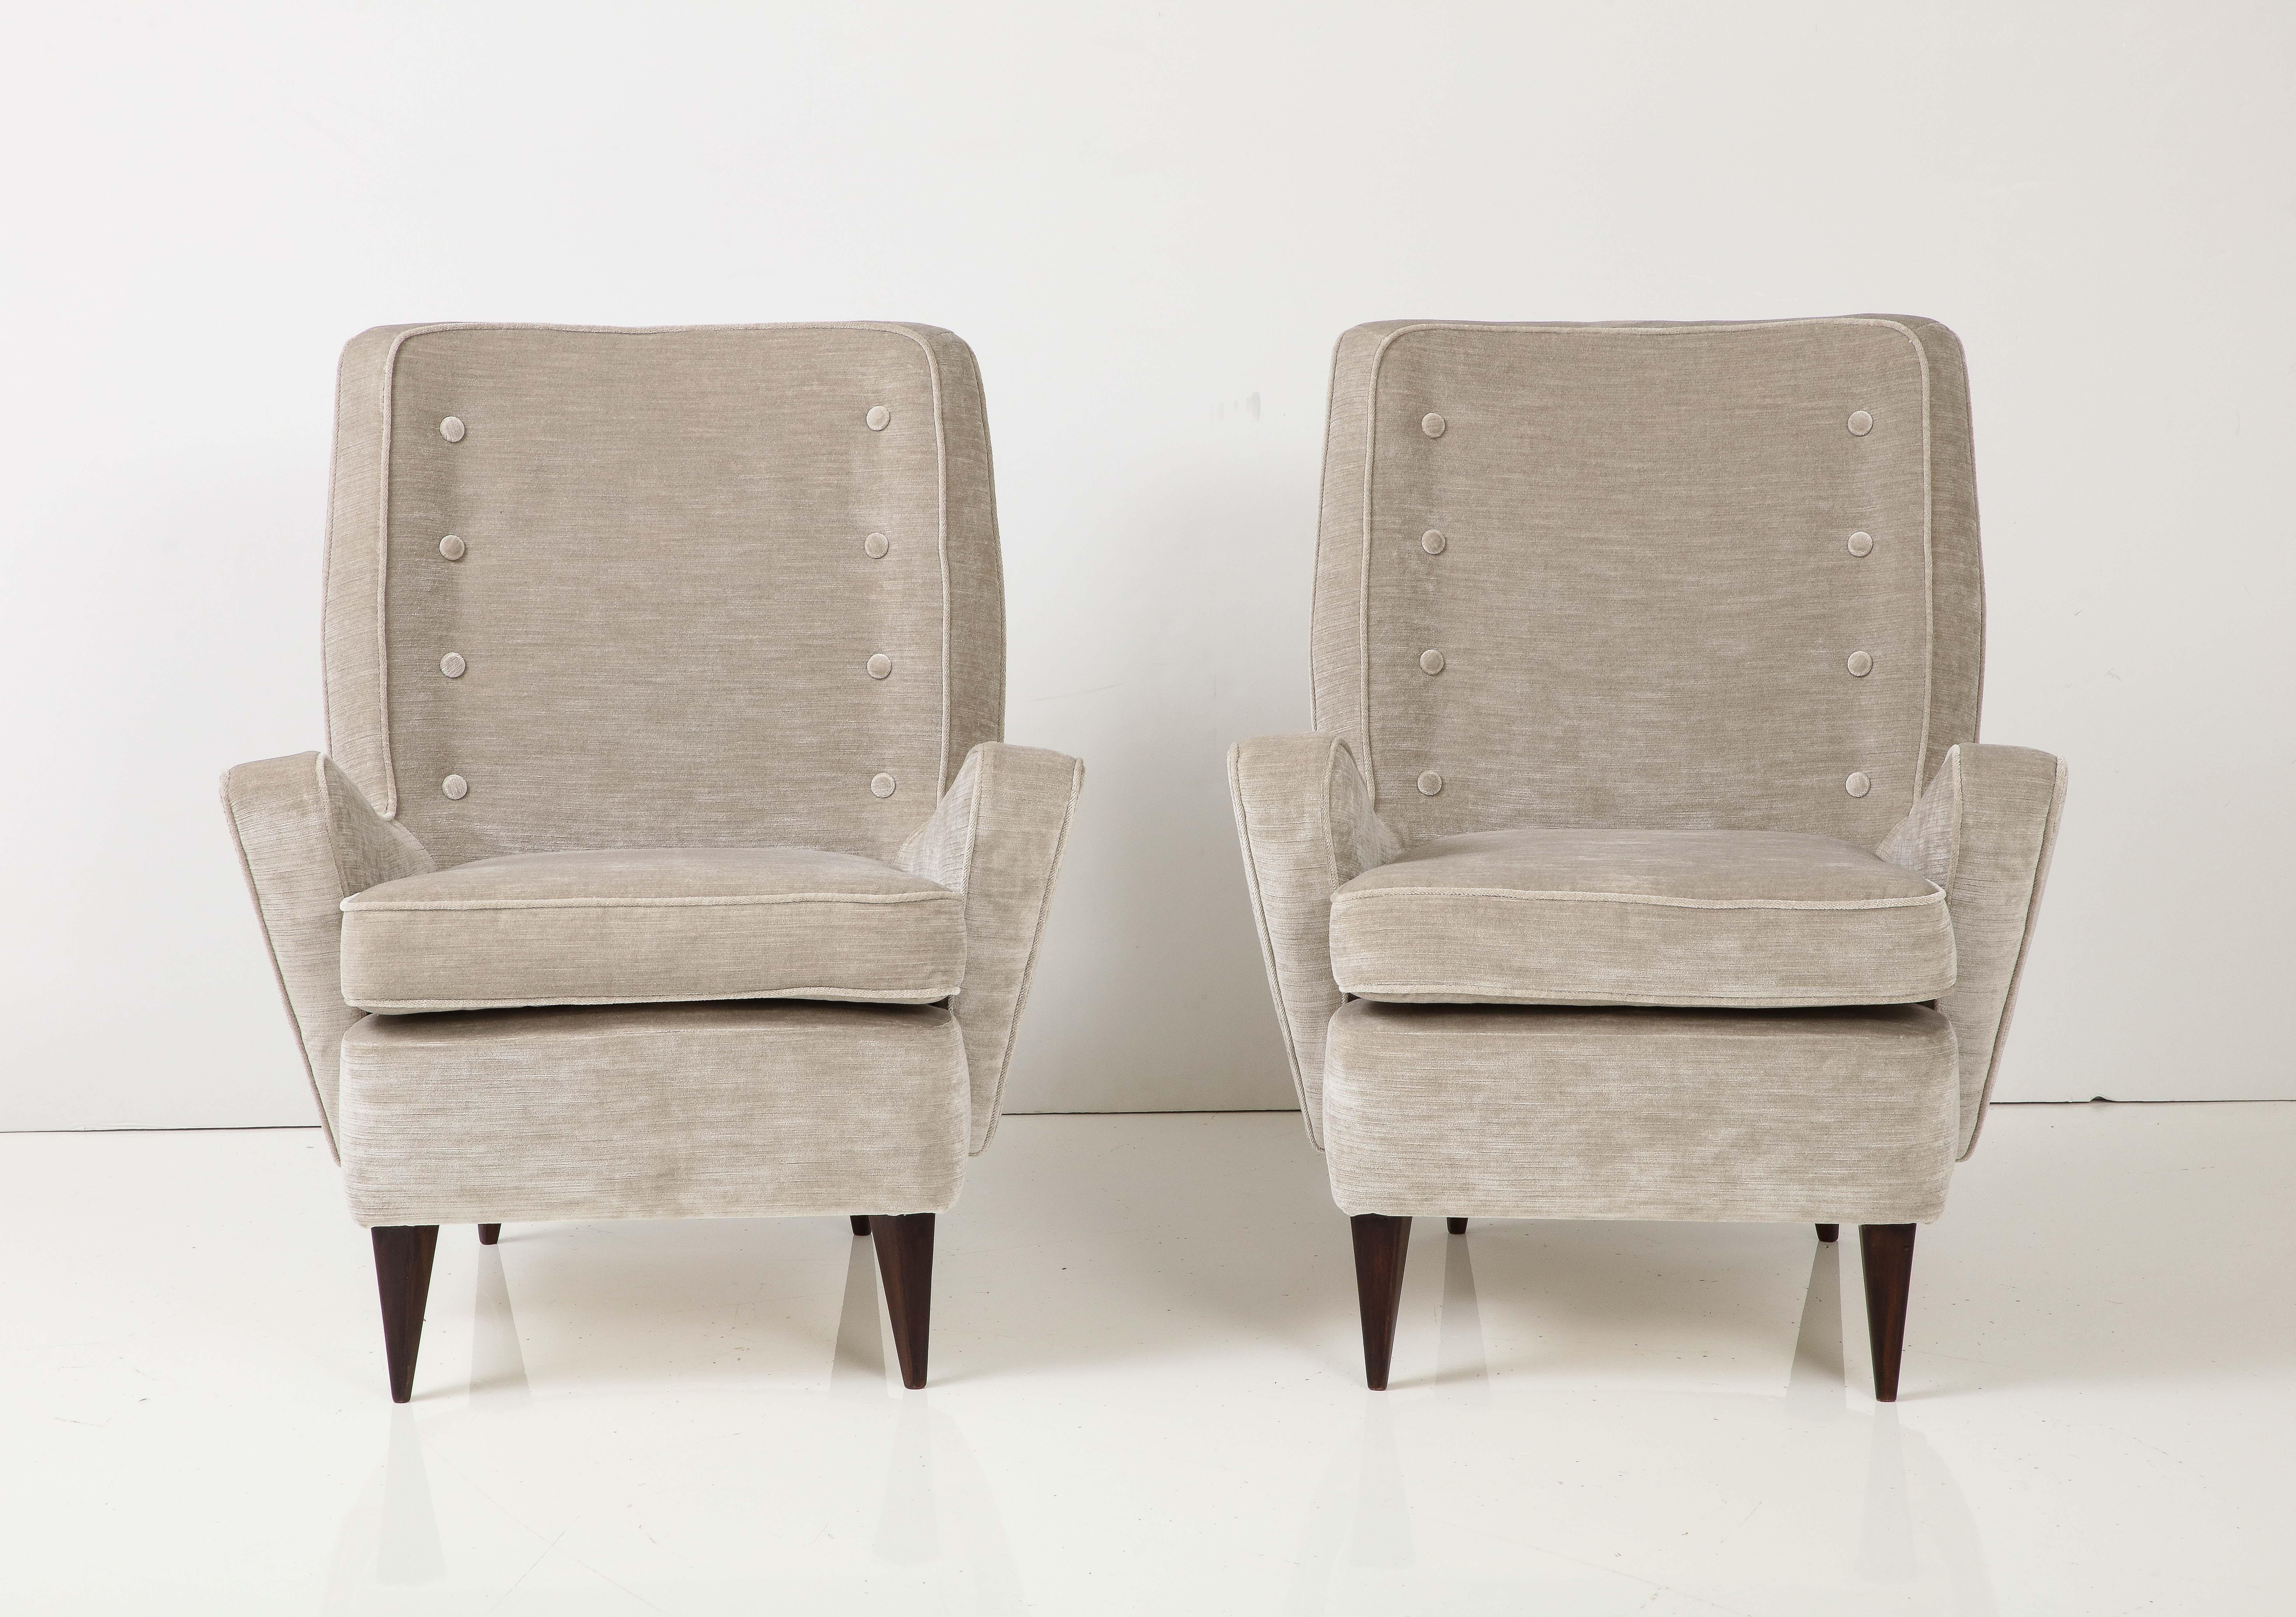 Pair of Italian Midcentury Greige Strie Velvet Upholstered Lounge Chairs 1